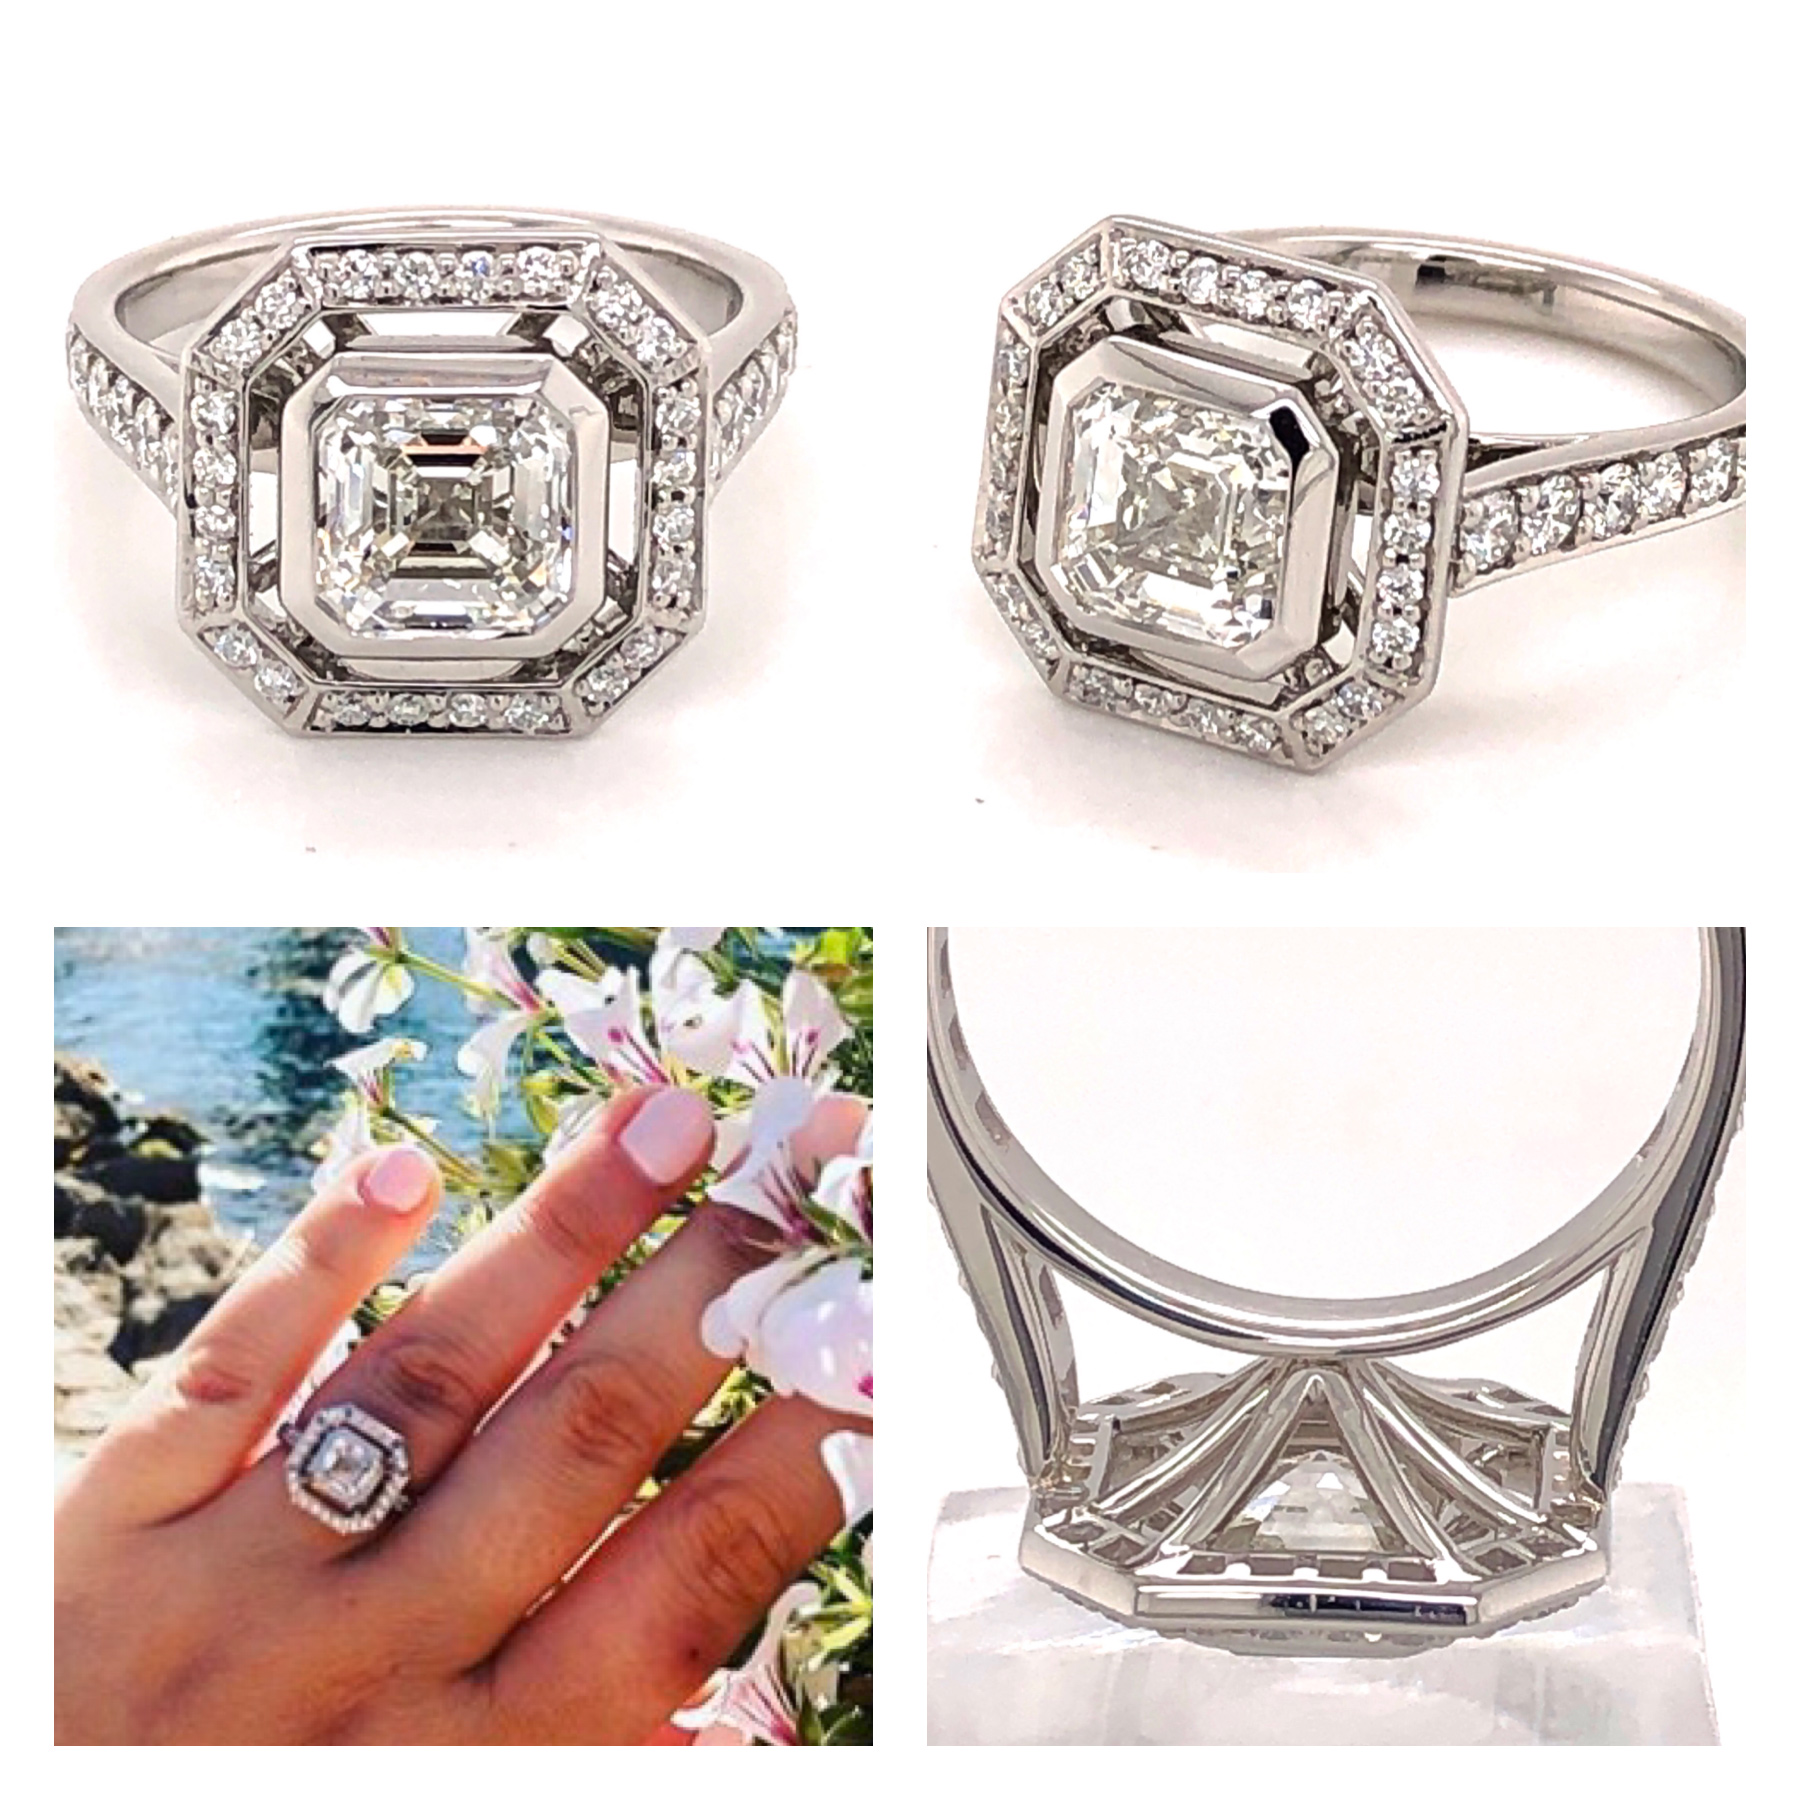 CAD designed art-deco style Asscher cut diamond ring